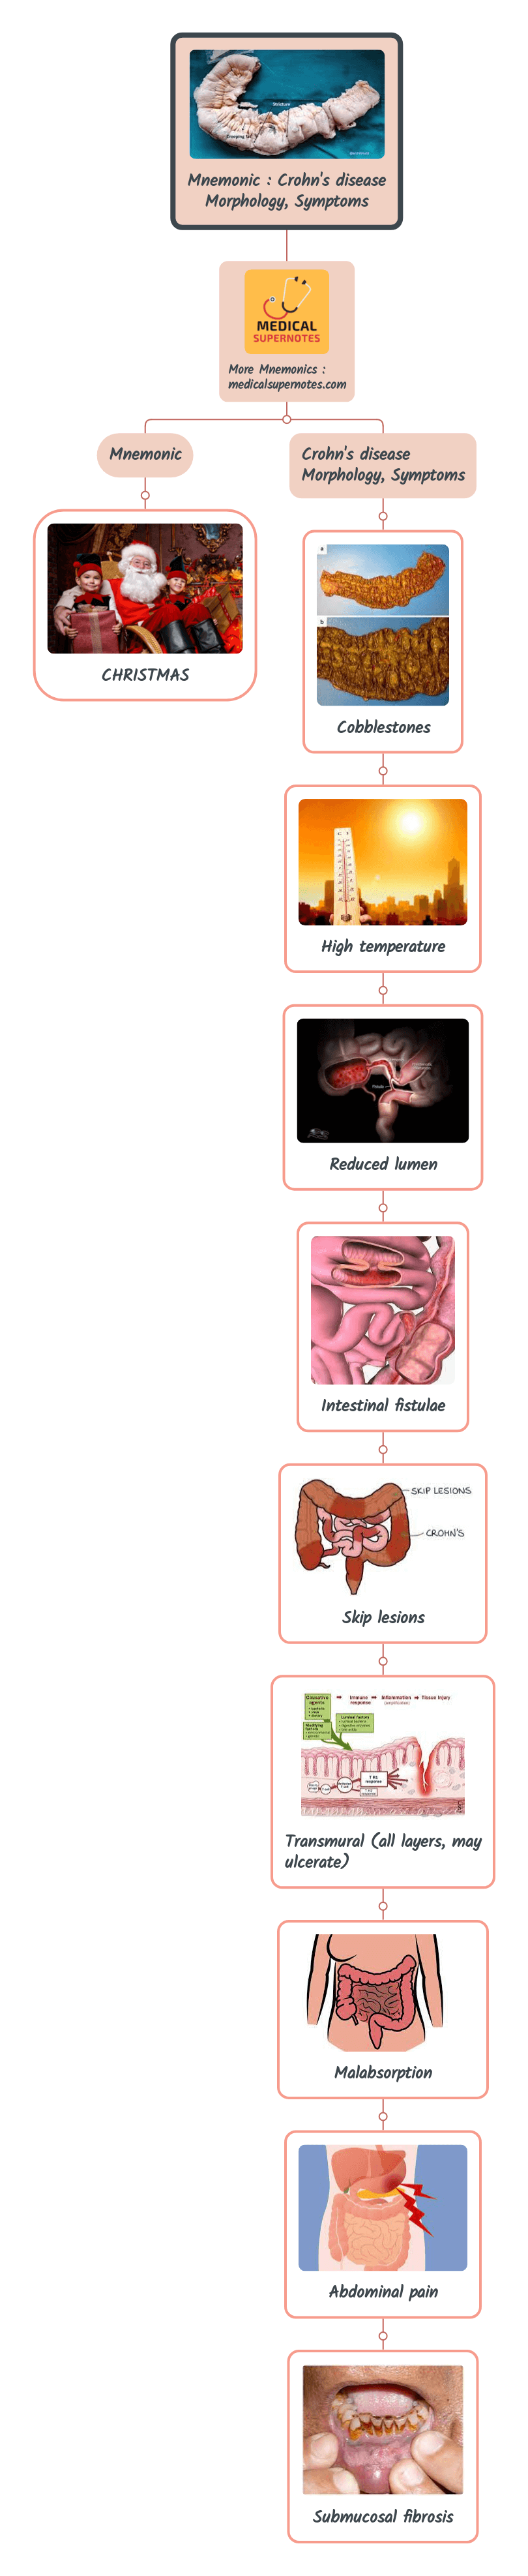 Mnemonic _ Crohn's disease Morphology, Symptoms